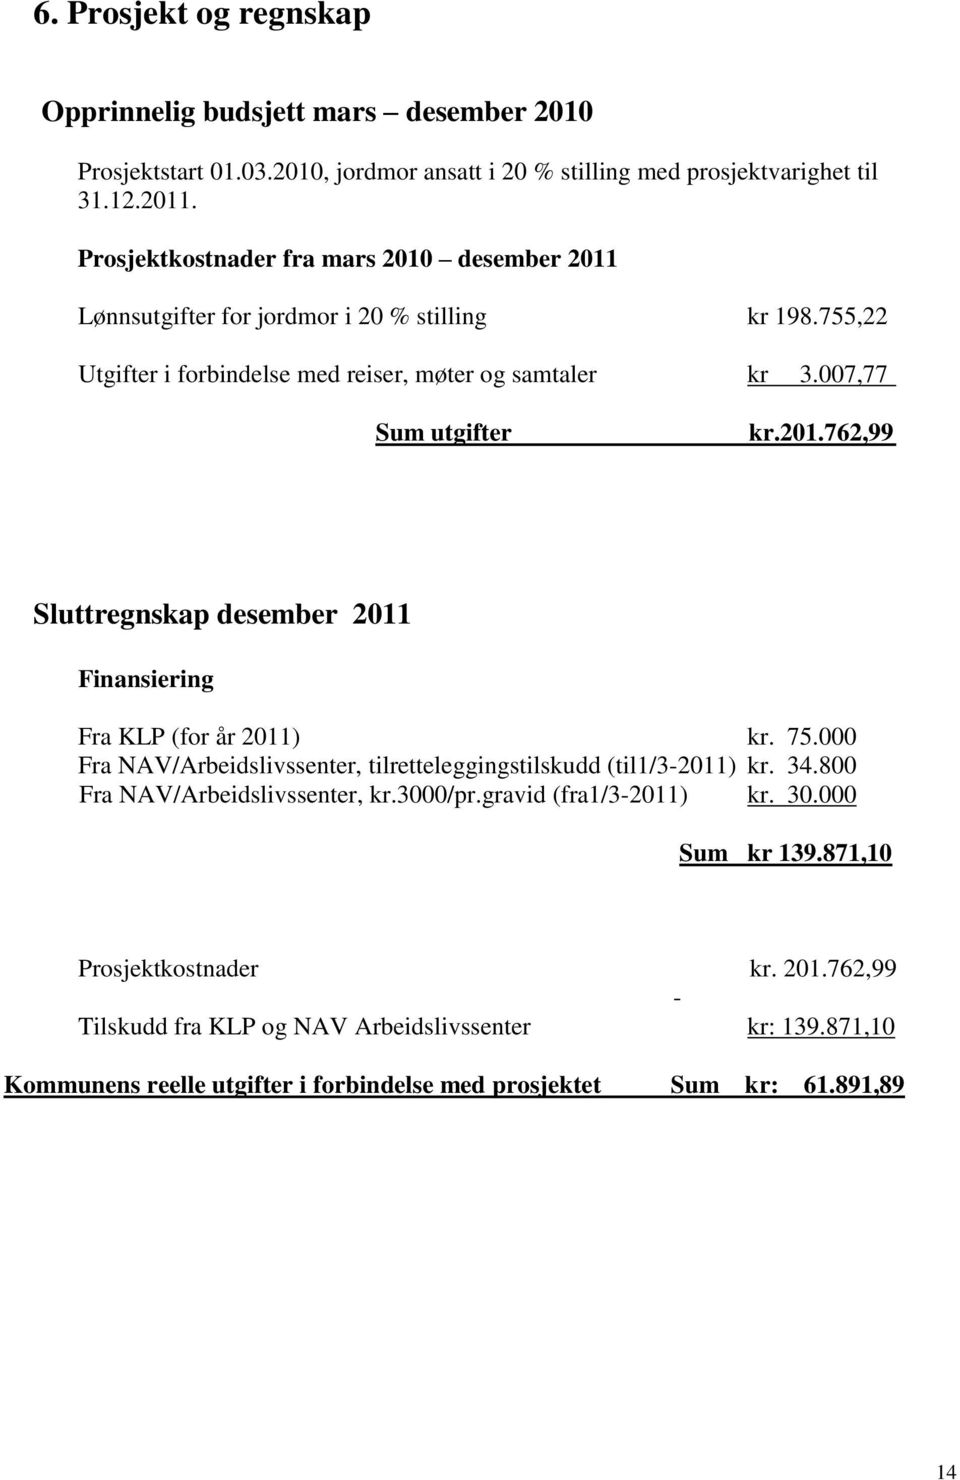 75.000 Fra NAV/Arbeidslivssenter, tilretteleggingstilskudd (til1/3-2011) kr. 34.800 Fra NAV/Arbeidslivssenter, kr.3000/pr.gravid (fra1/3-2011) kr. 30.000 Sum kr 139.